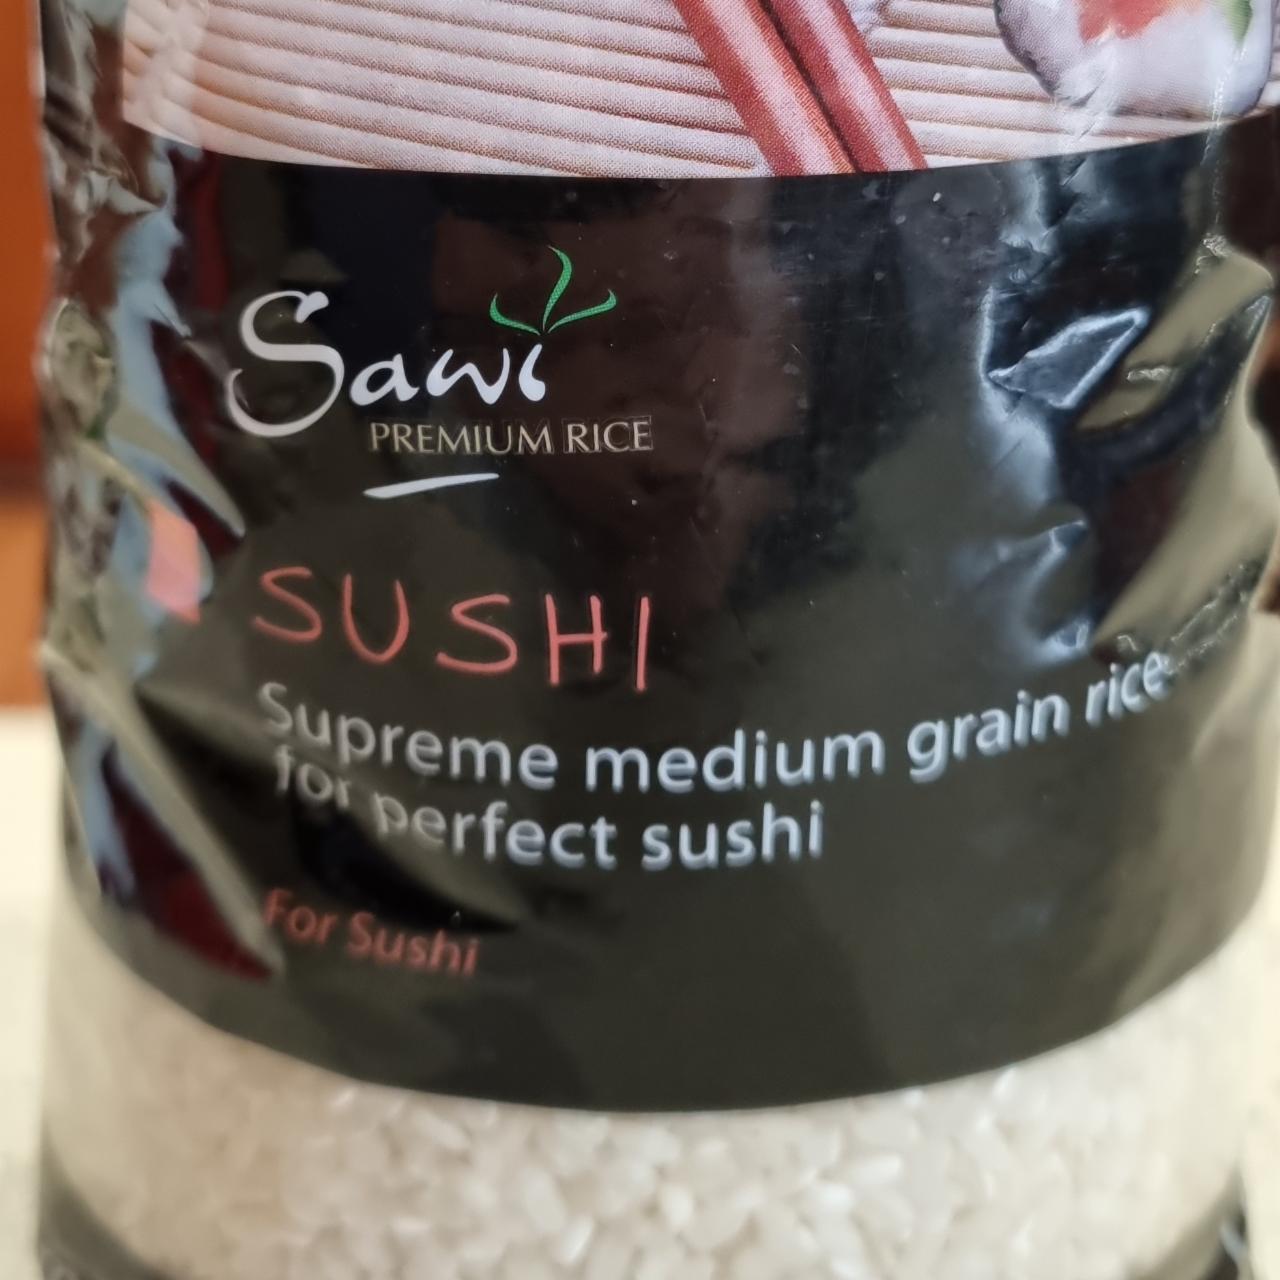 Fotografie - Sushi Supreme medium grain rice Sawi premium rice